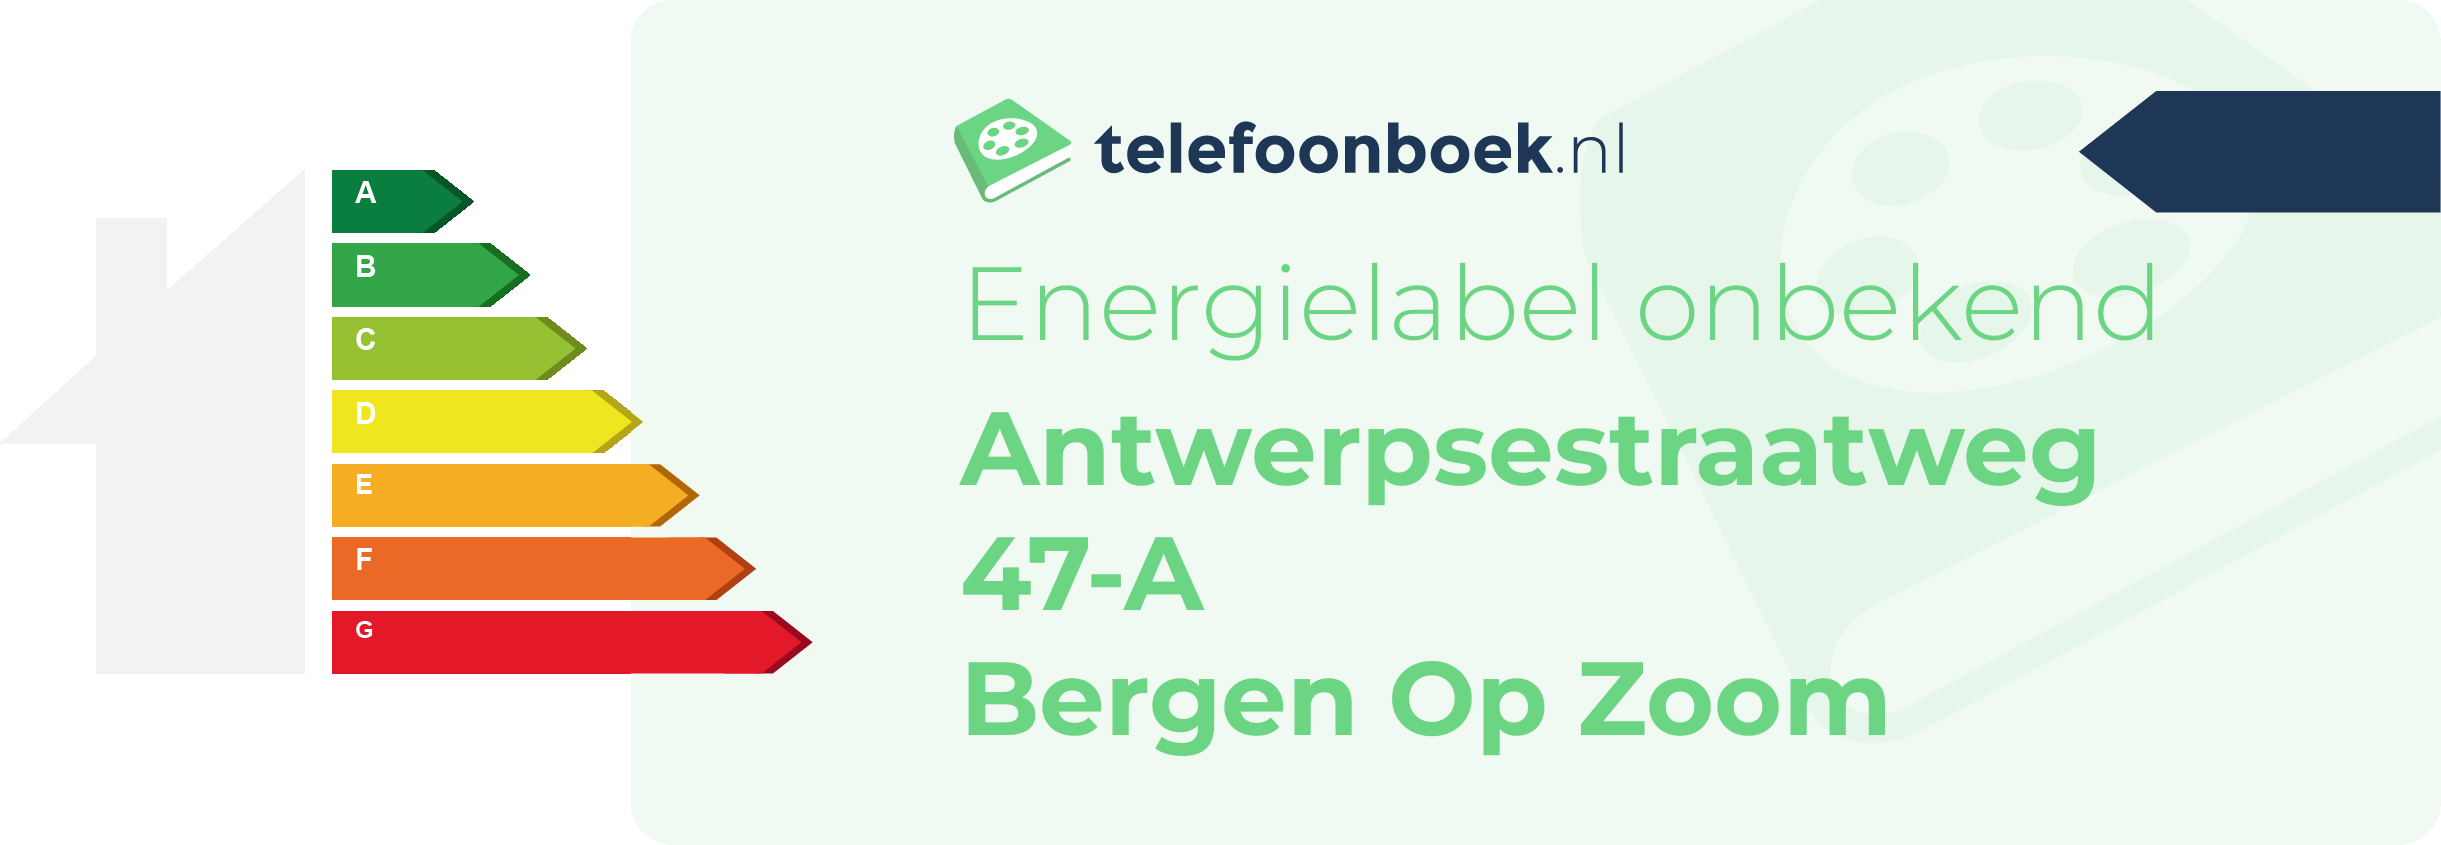 Energielabel Antwerpsestraatweg 47-A Bergen Op Zoom